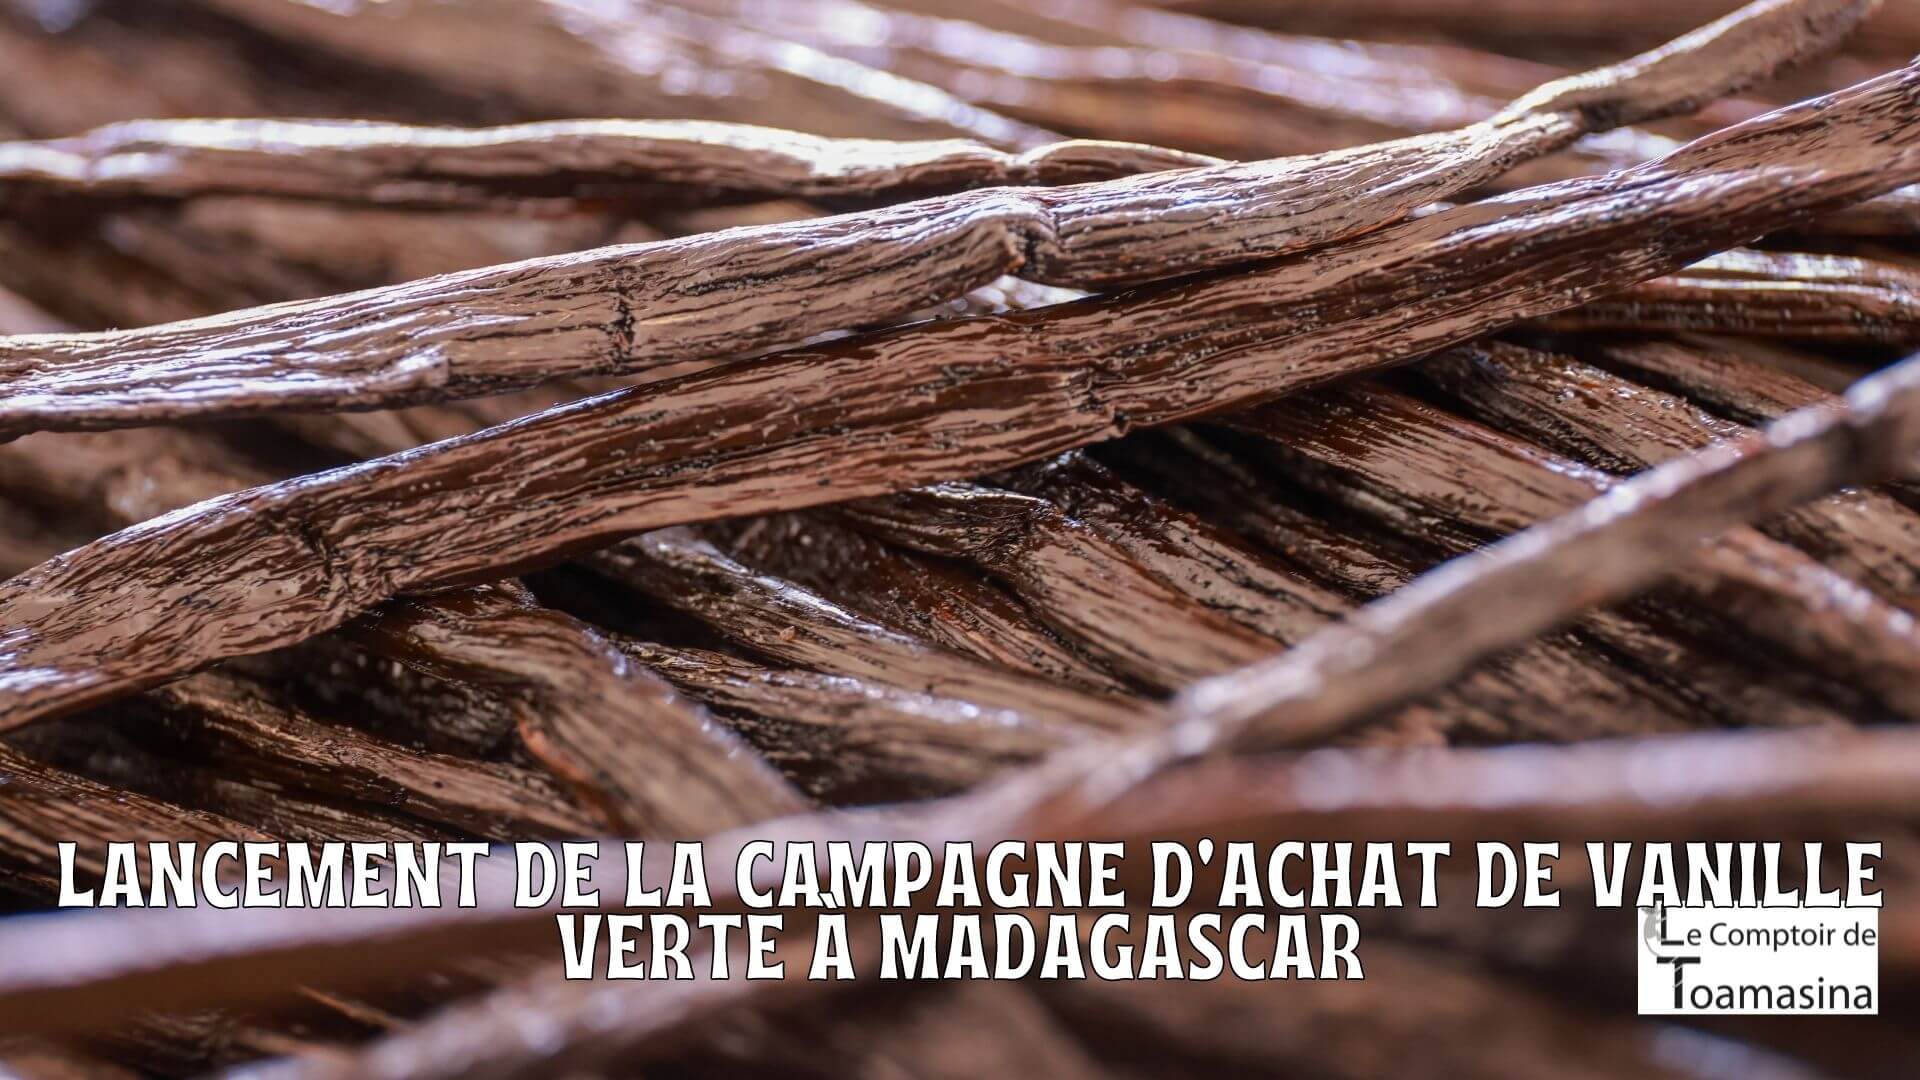 Madagascar Lancement de la campagne d'achat de vanille verte de la région SAVA